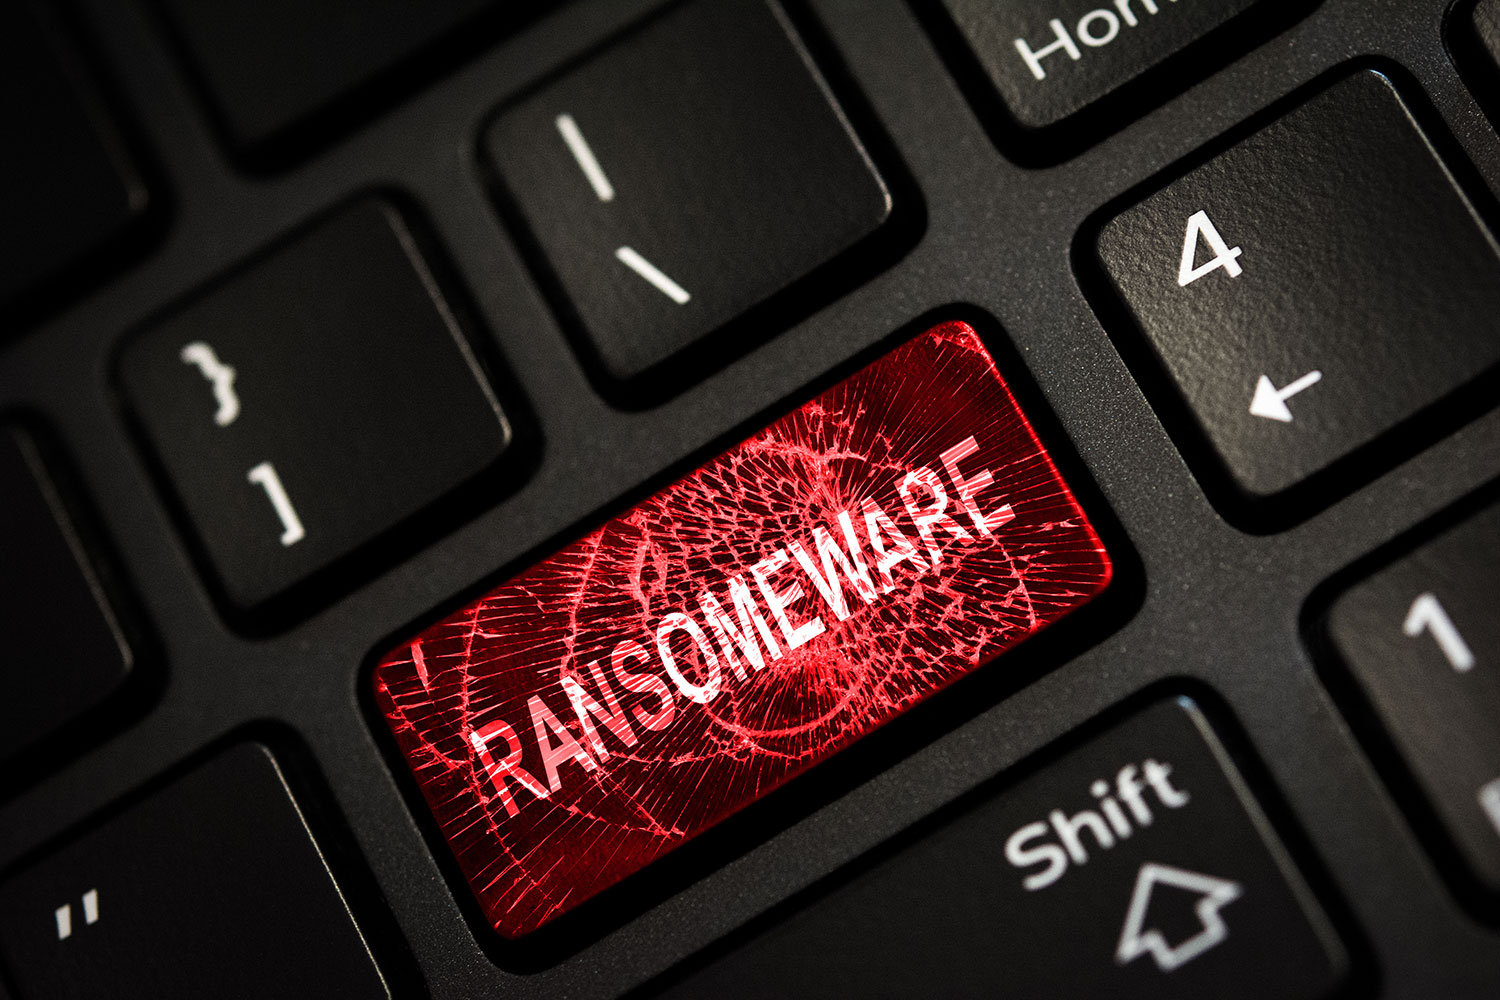 tecla de ordenador con la palabra Ransomware